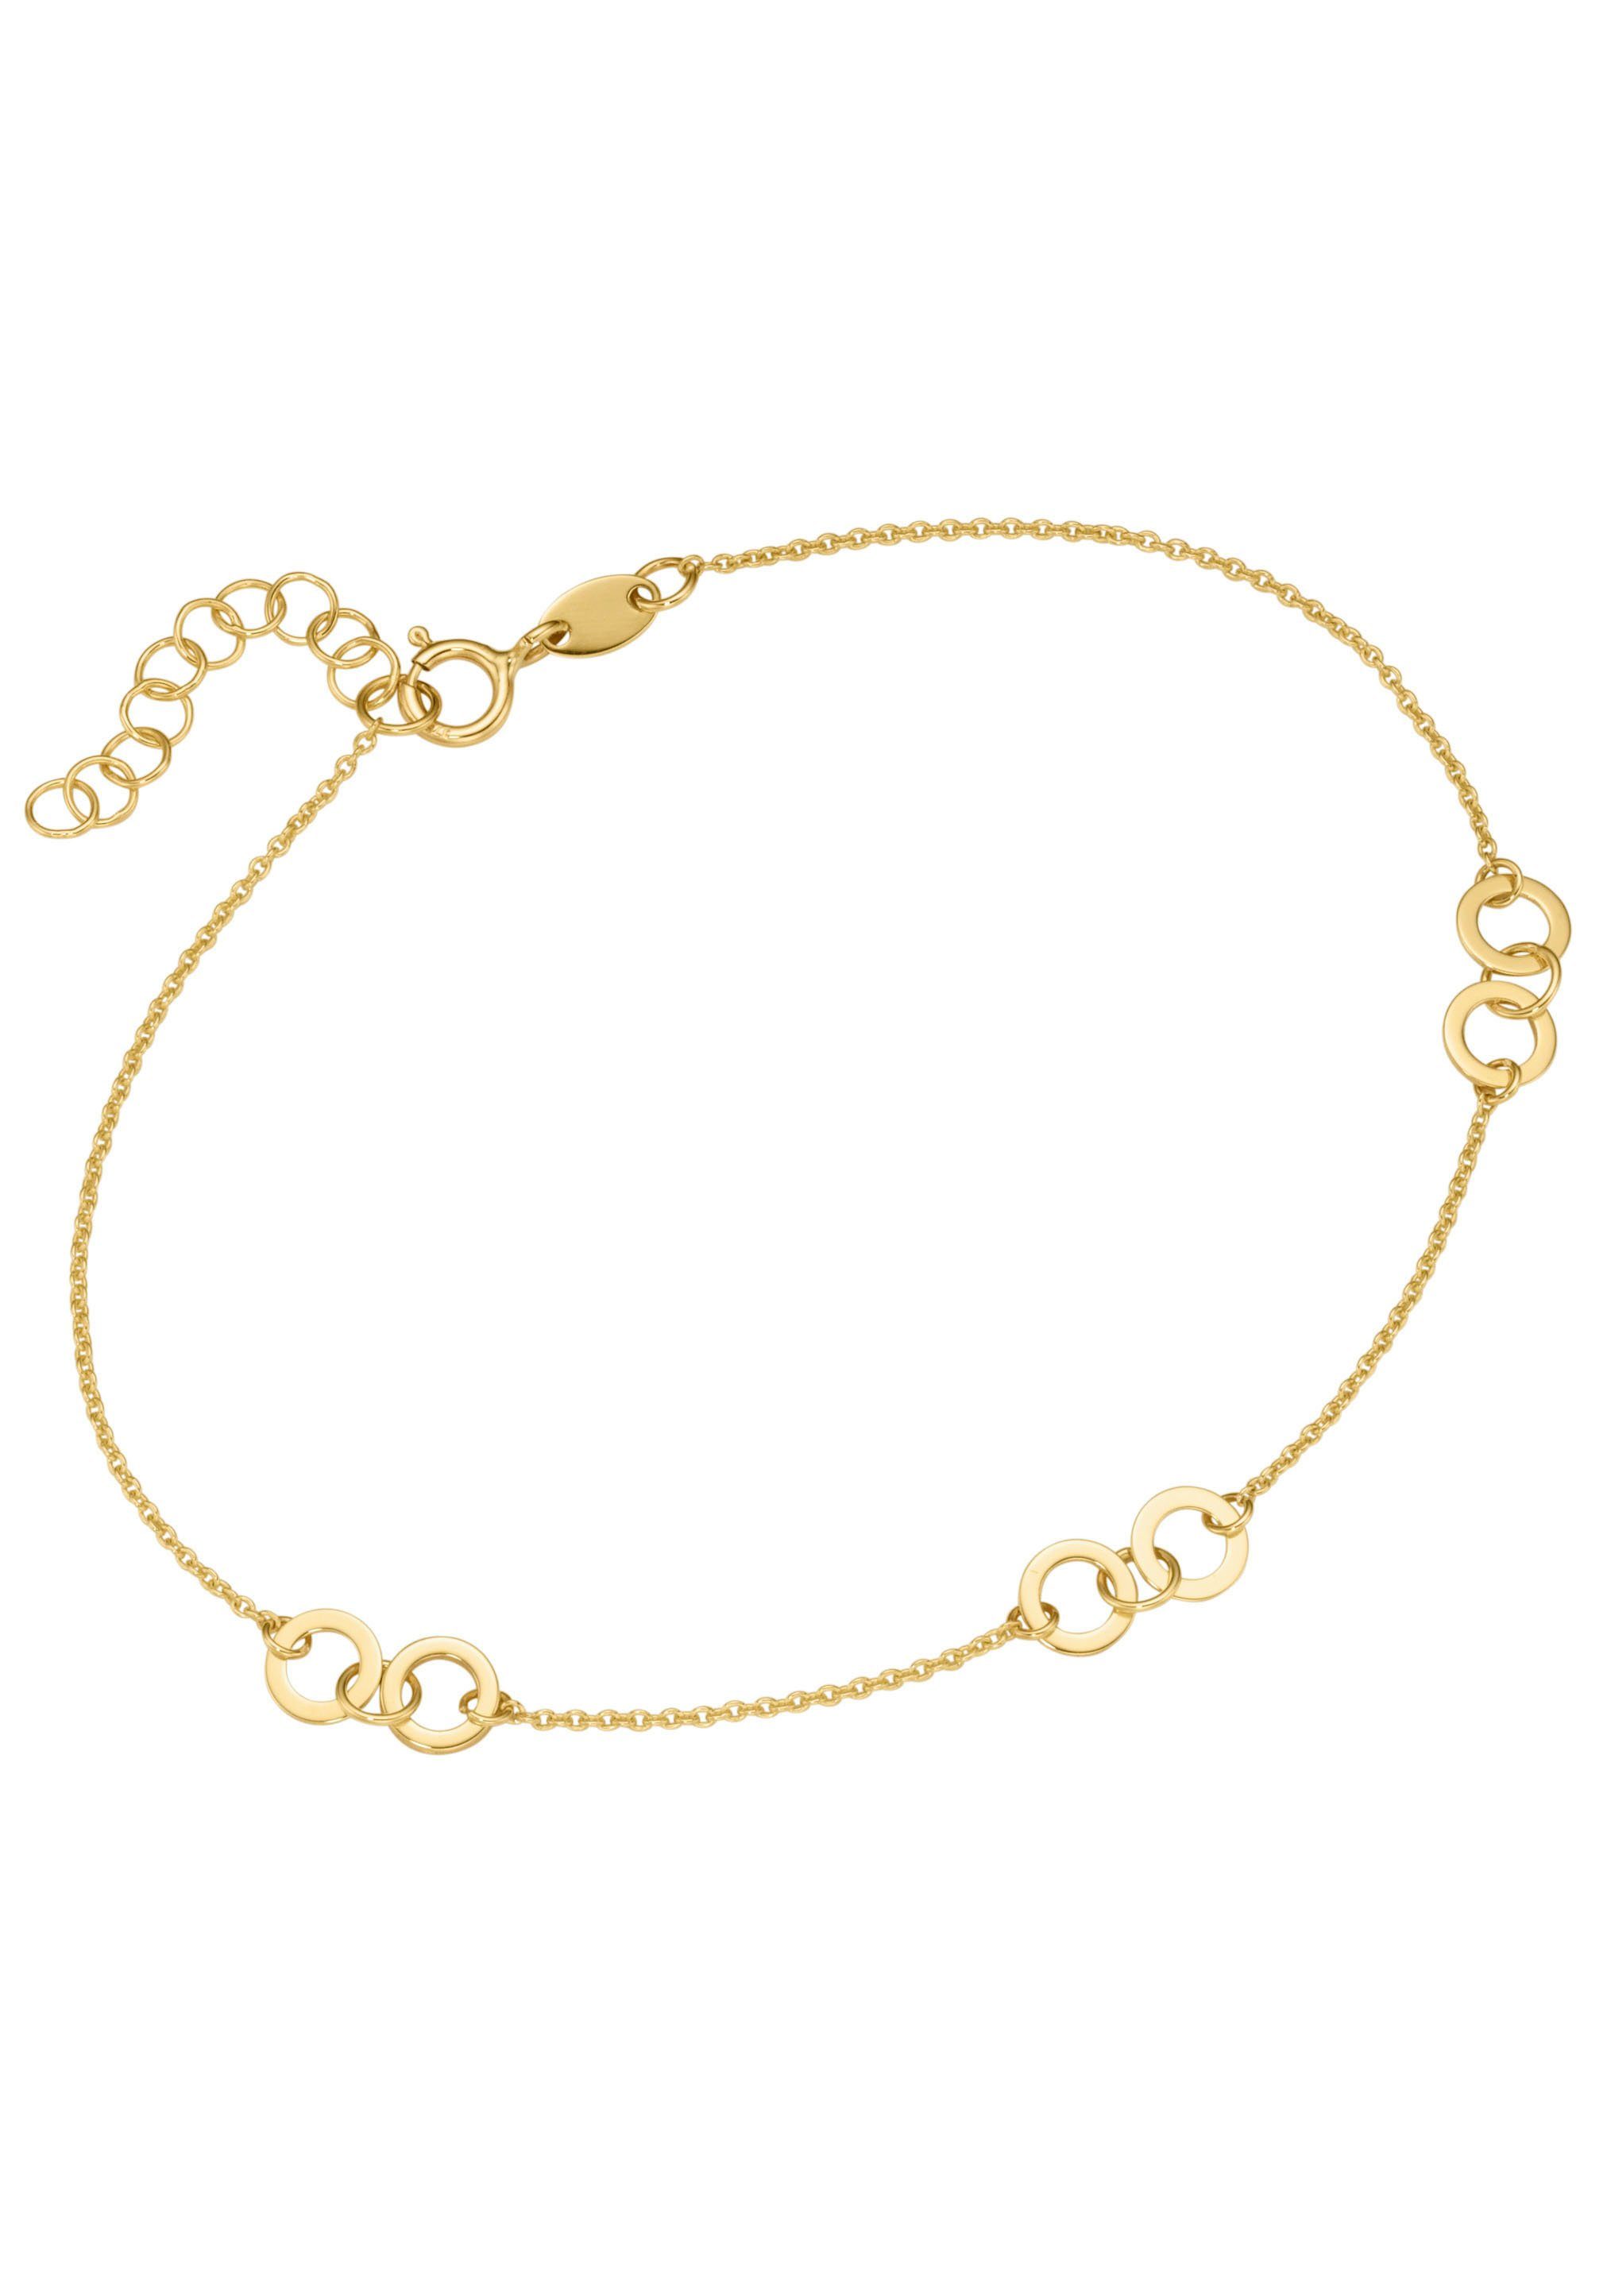 Firetti Armband Schmuck Geschenk Gold 375 Armschmuck Armkette Goldarmband, zu Kleid, Shirt, Jeans, Sneaker! Anlass Geburtstag Weihnachten